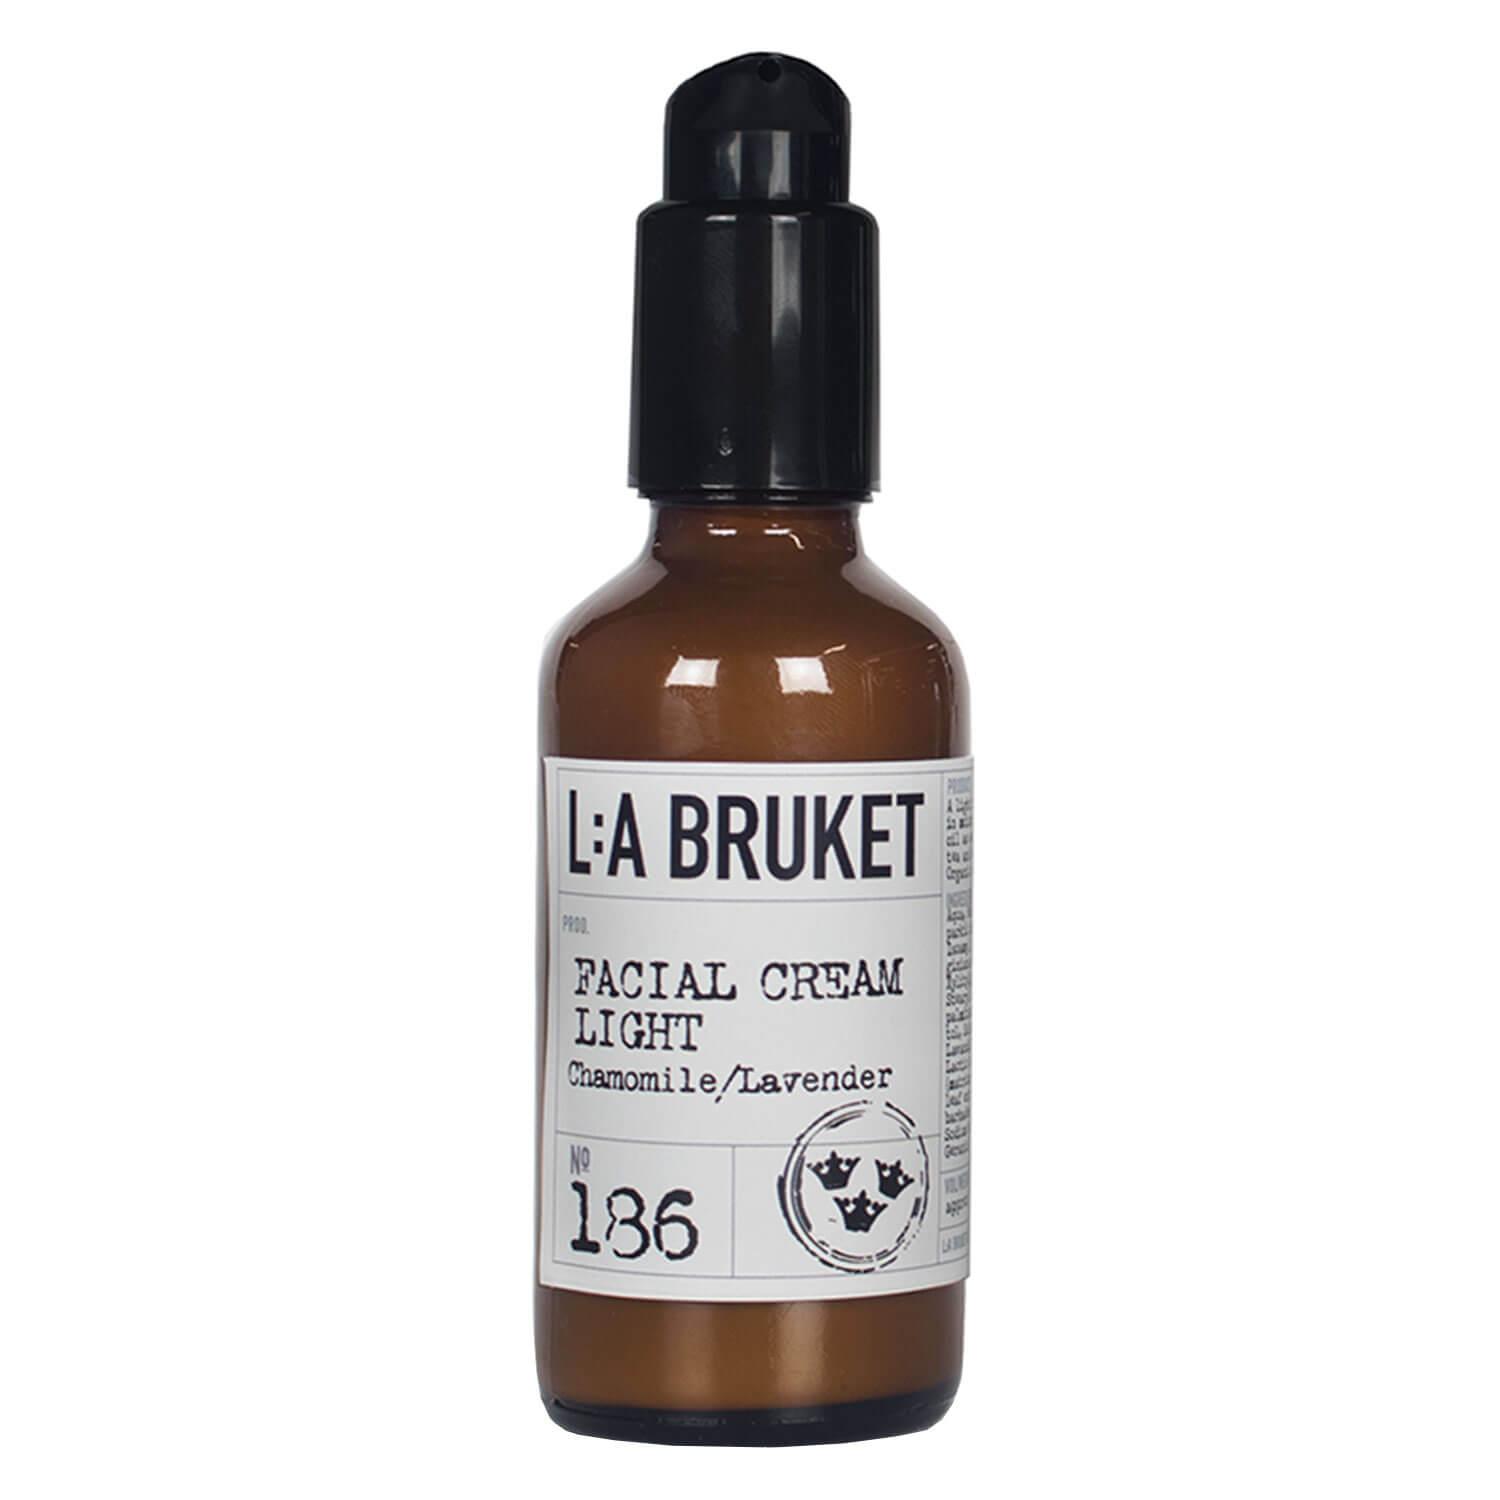 L:A Bruket - No.186 Facial Cream Light Chamomile/Lavender